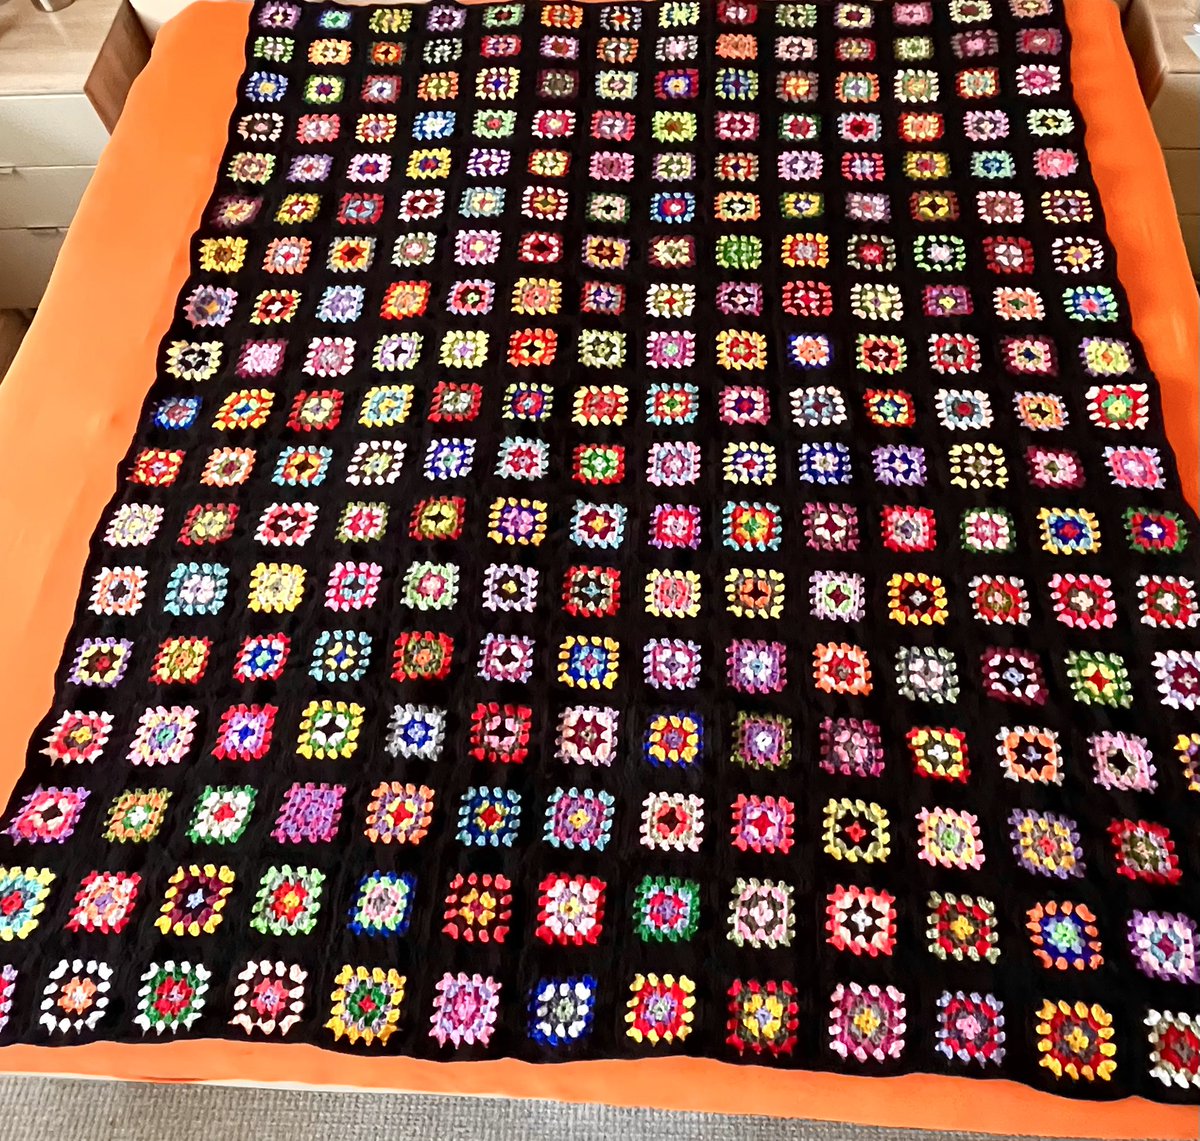 Guten Morgen 🤗🥰
Meine Decke ist fertig ✅☺️
10 Wochen hat’s gedauert. Sie ist 2m x 1,55m, besteht aus 252 Grannys, 46 Knäul Wolle 🧶 und hat 22 Farben 
🩷🩵🤍❤️💙🤎🧡💜💛🖤💚🩶🩷🩵🤍❤️💙🤎🧡💜❤️💛
#Granny #Grannysquare